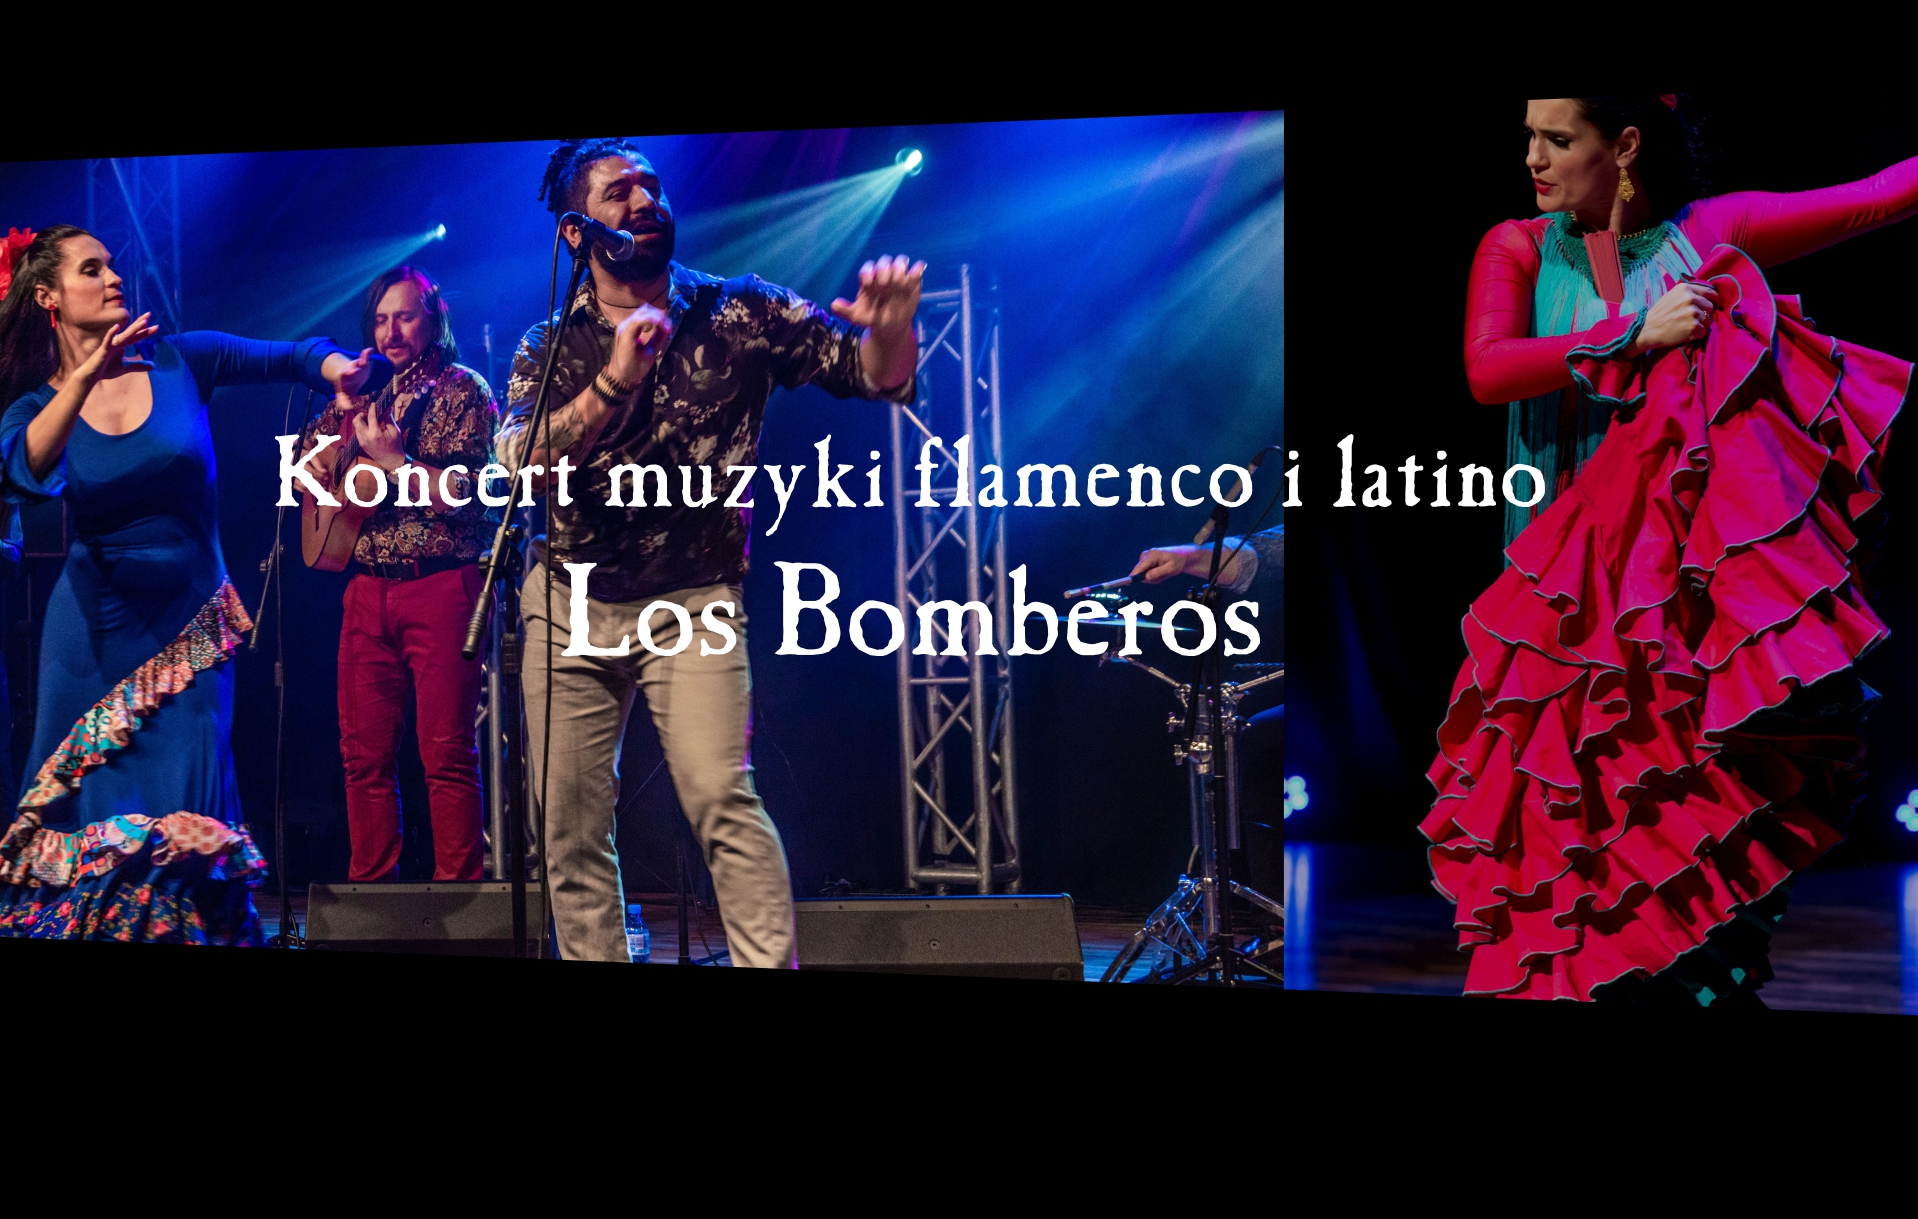 Flamenco i latino